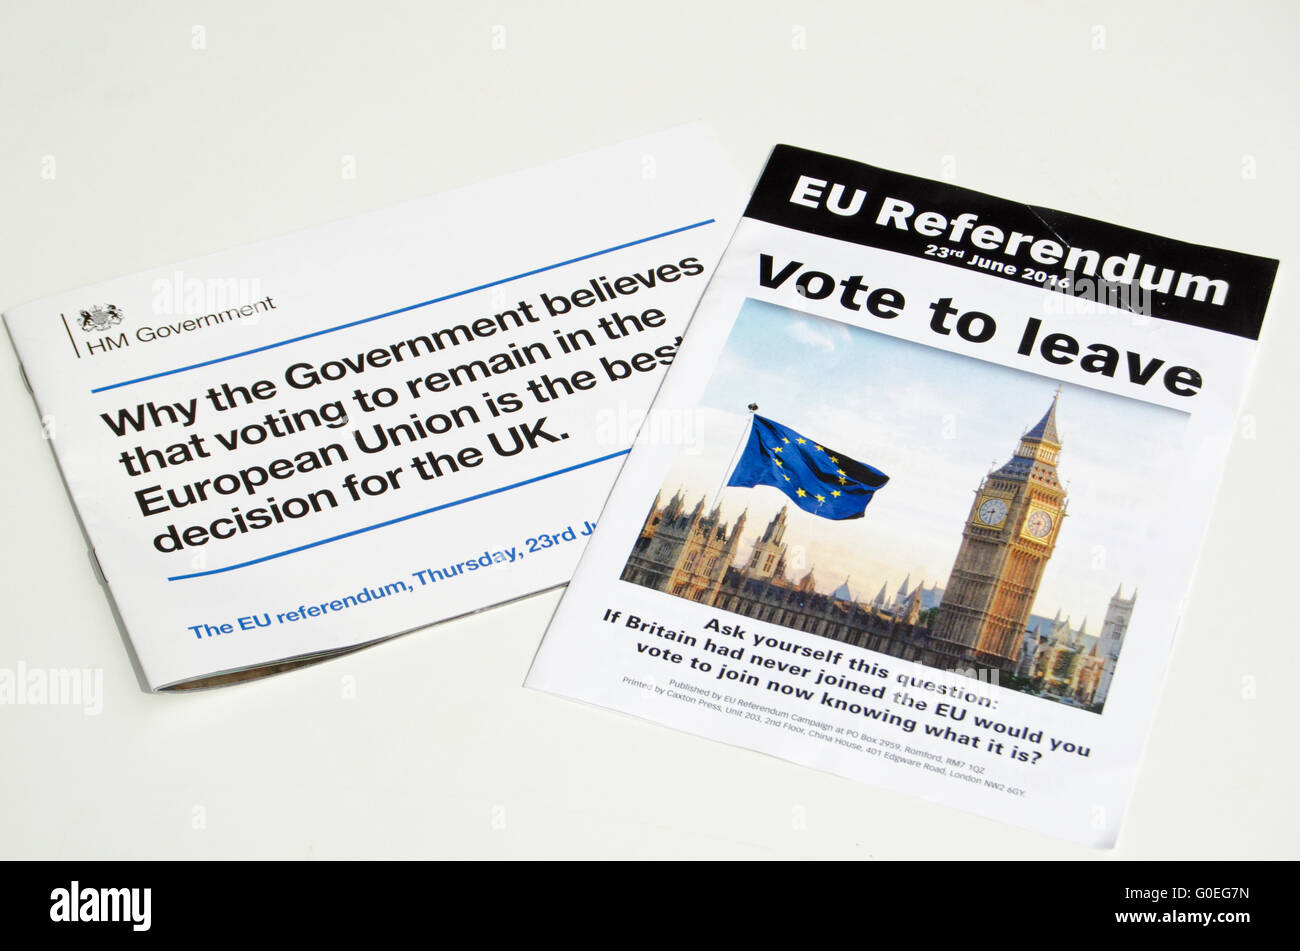 LONDON, UK - 1. Mai 2016: Prospekte, Förderung des Urlaubs und bleiben von Seiten der EU-Referendum-Kampagne.  Die Abstimmung soll am 23. Juni 2016 stattfinden. Stockfoto